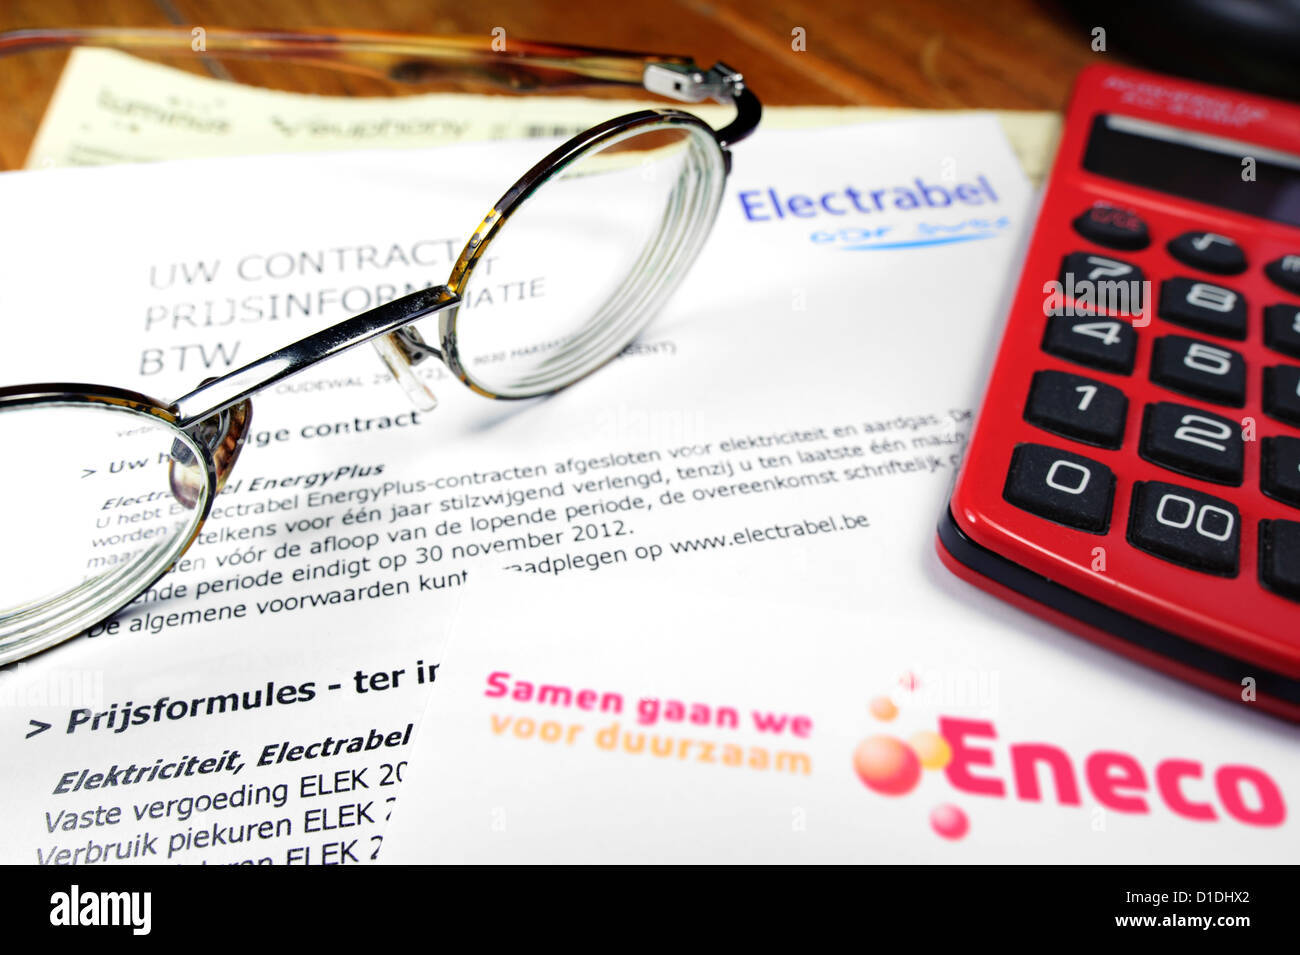 Calculatrice et de factures flamand Eneco et Electrabel, sociétés belge de l'énergie, les fournisseurs d'électricité et de gaz, Belgique Banque D'Images